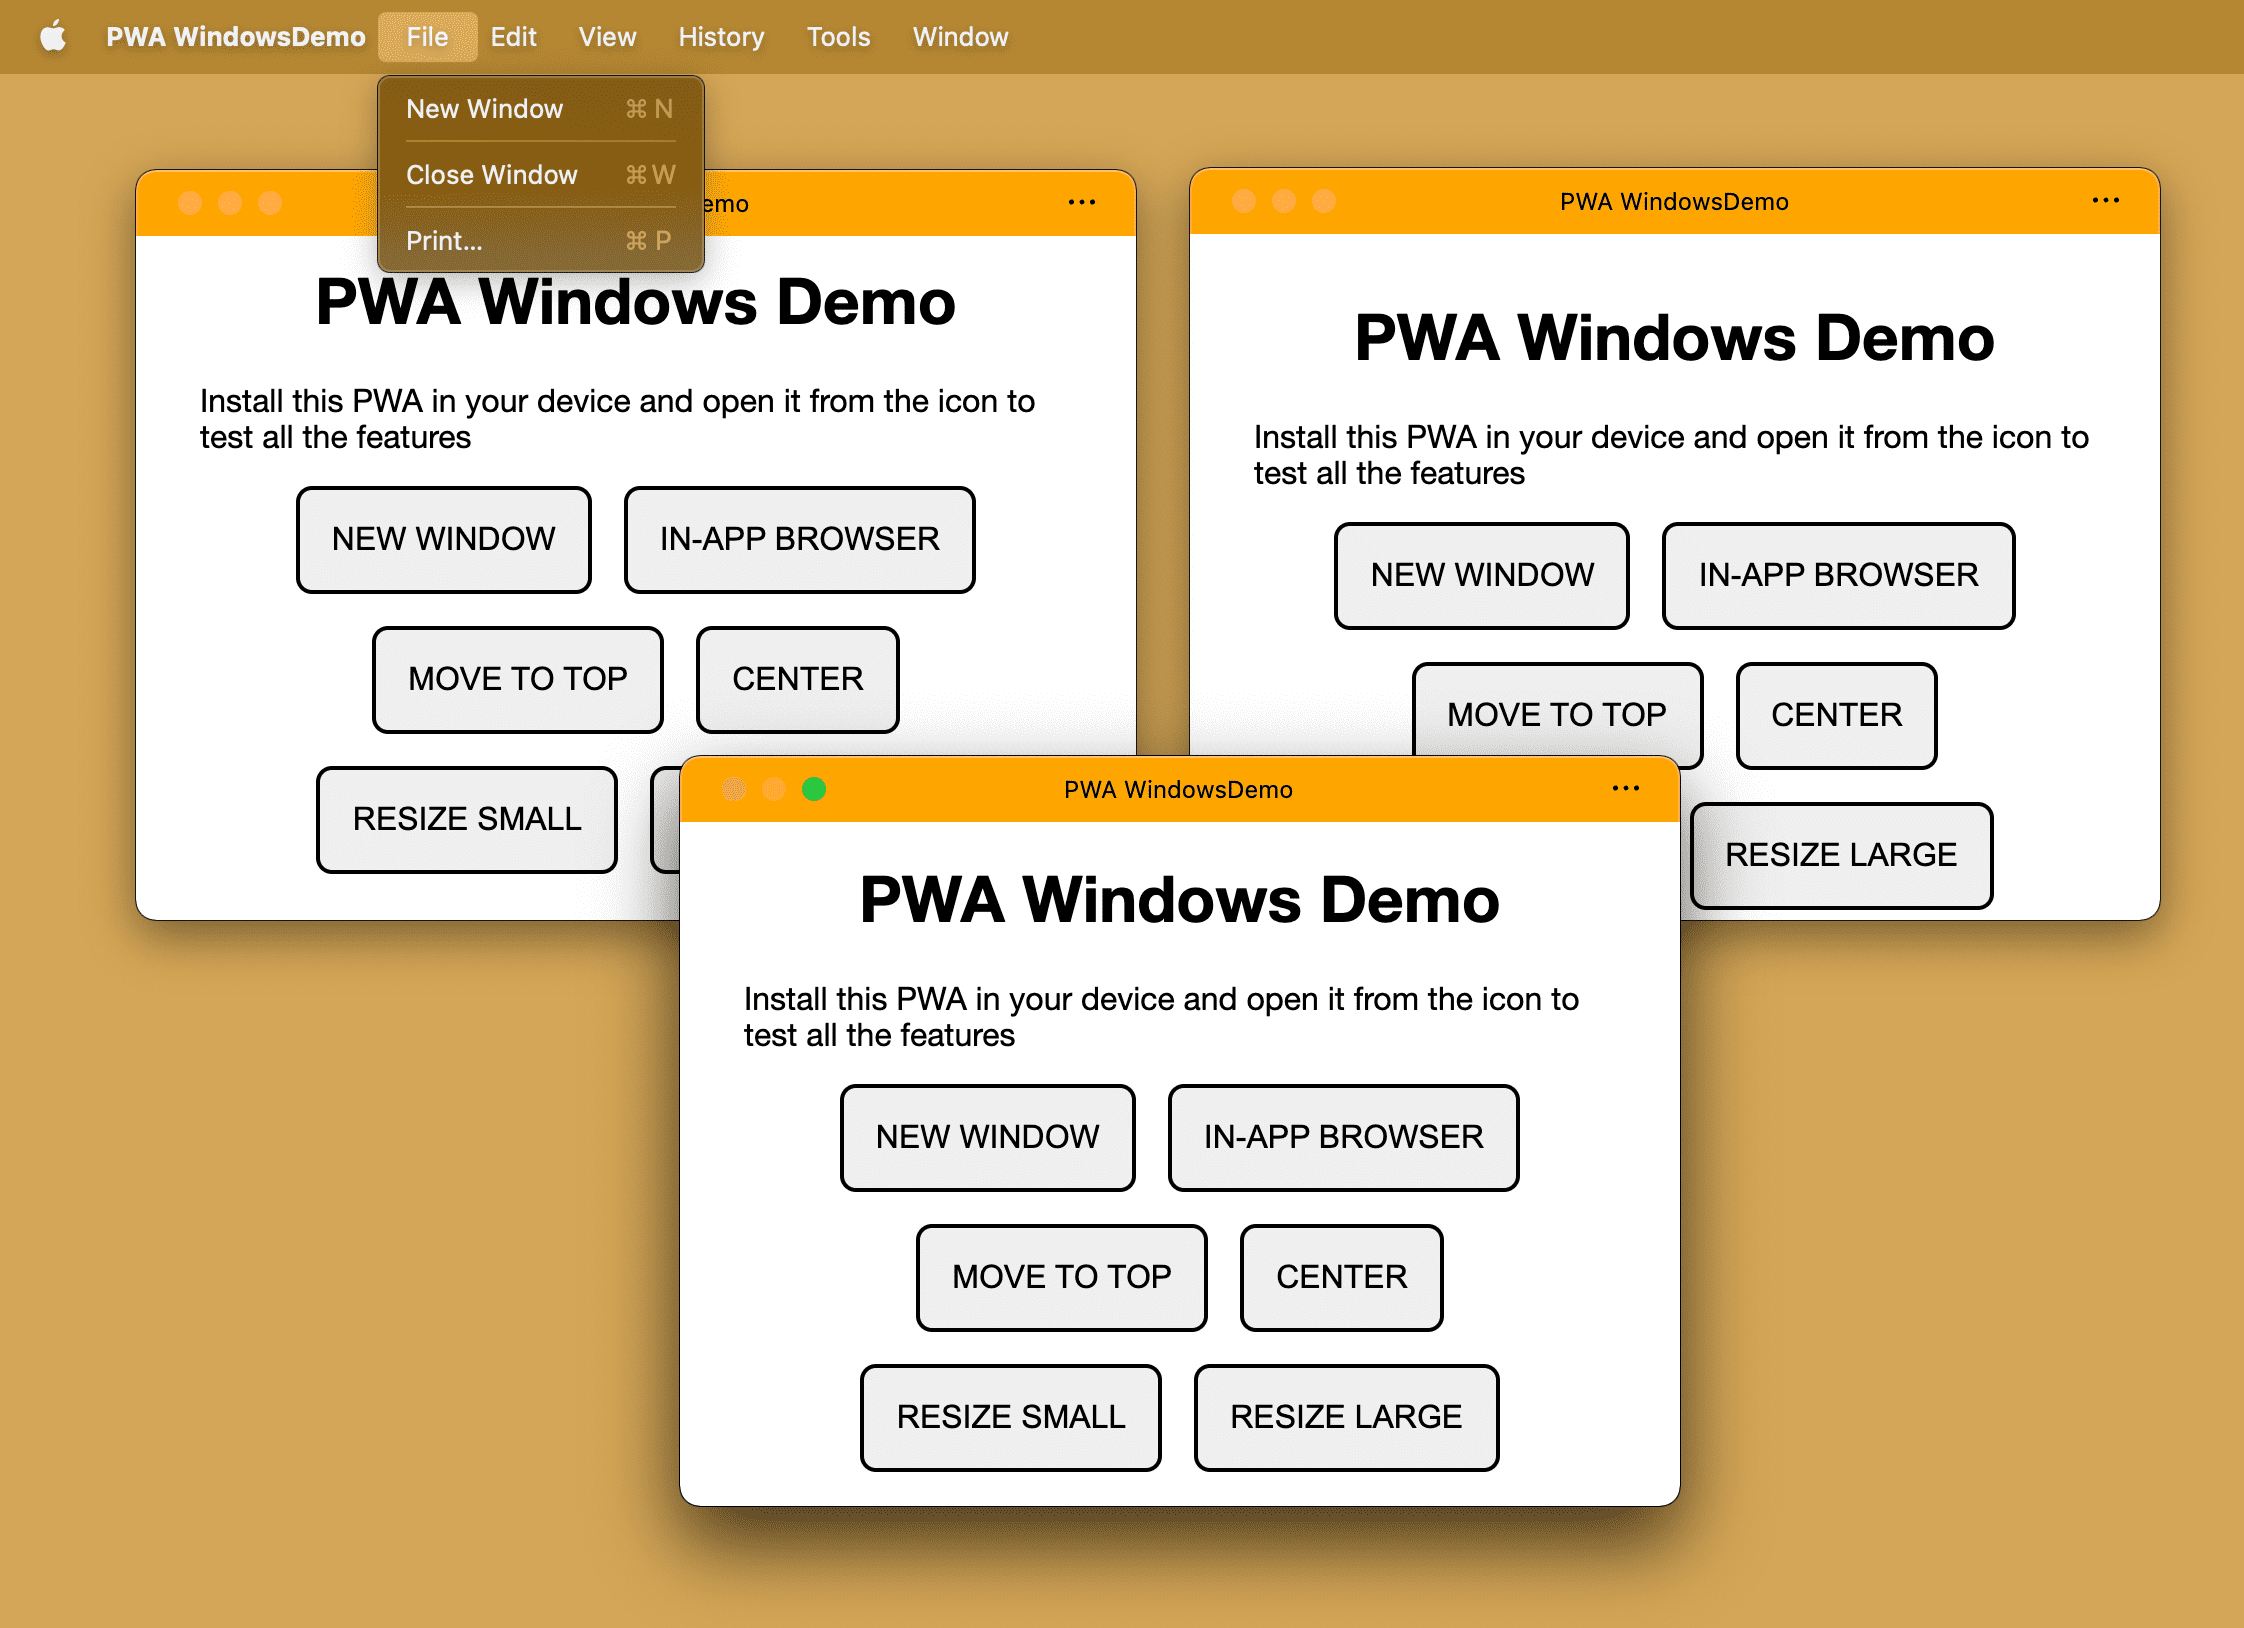 安裝同一個 PWA，並在電腦作業系統上開啟多個視窗。